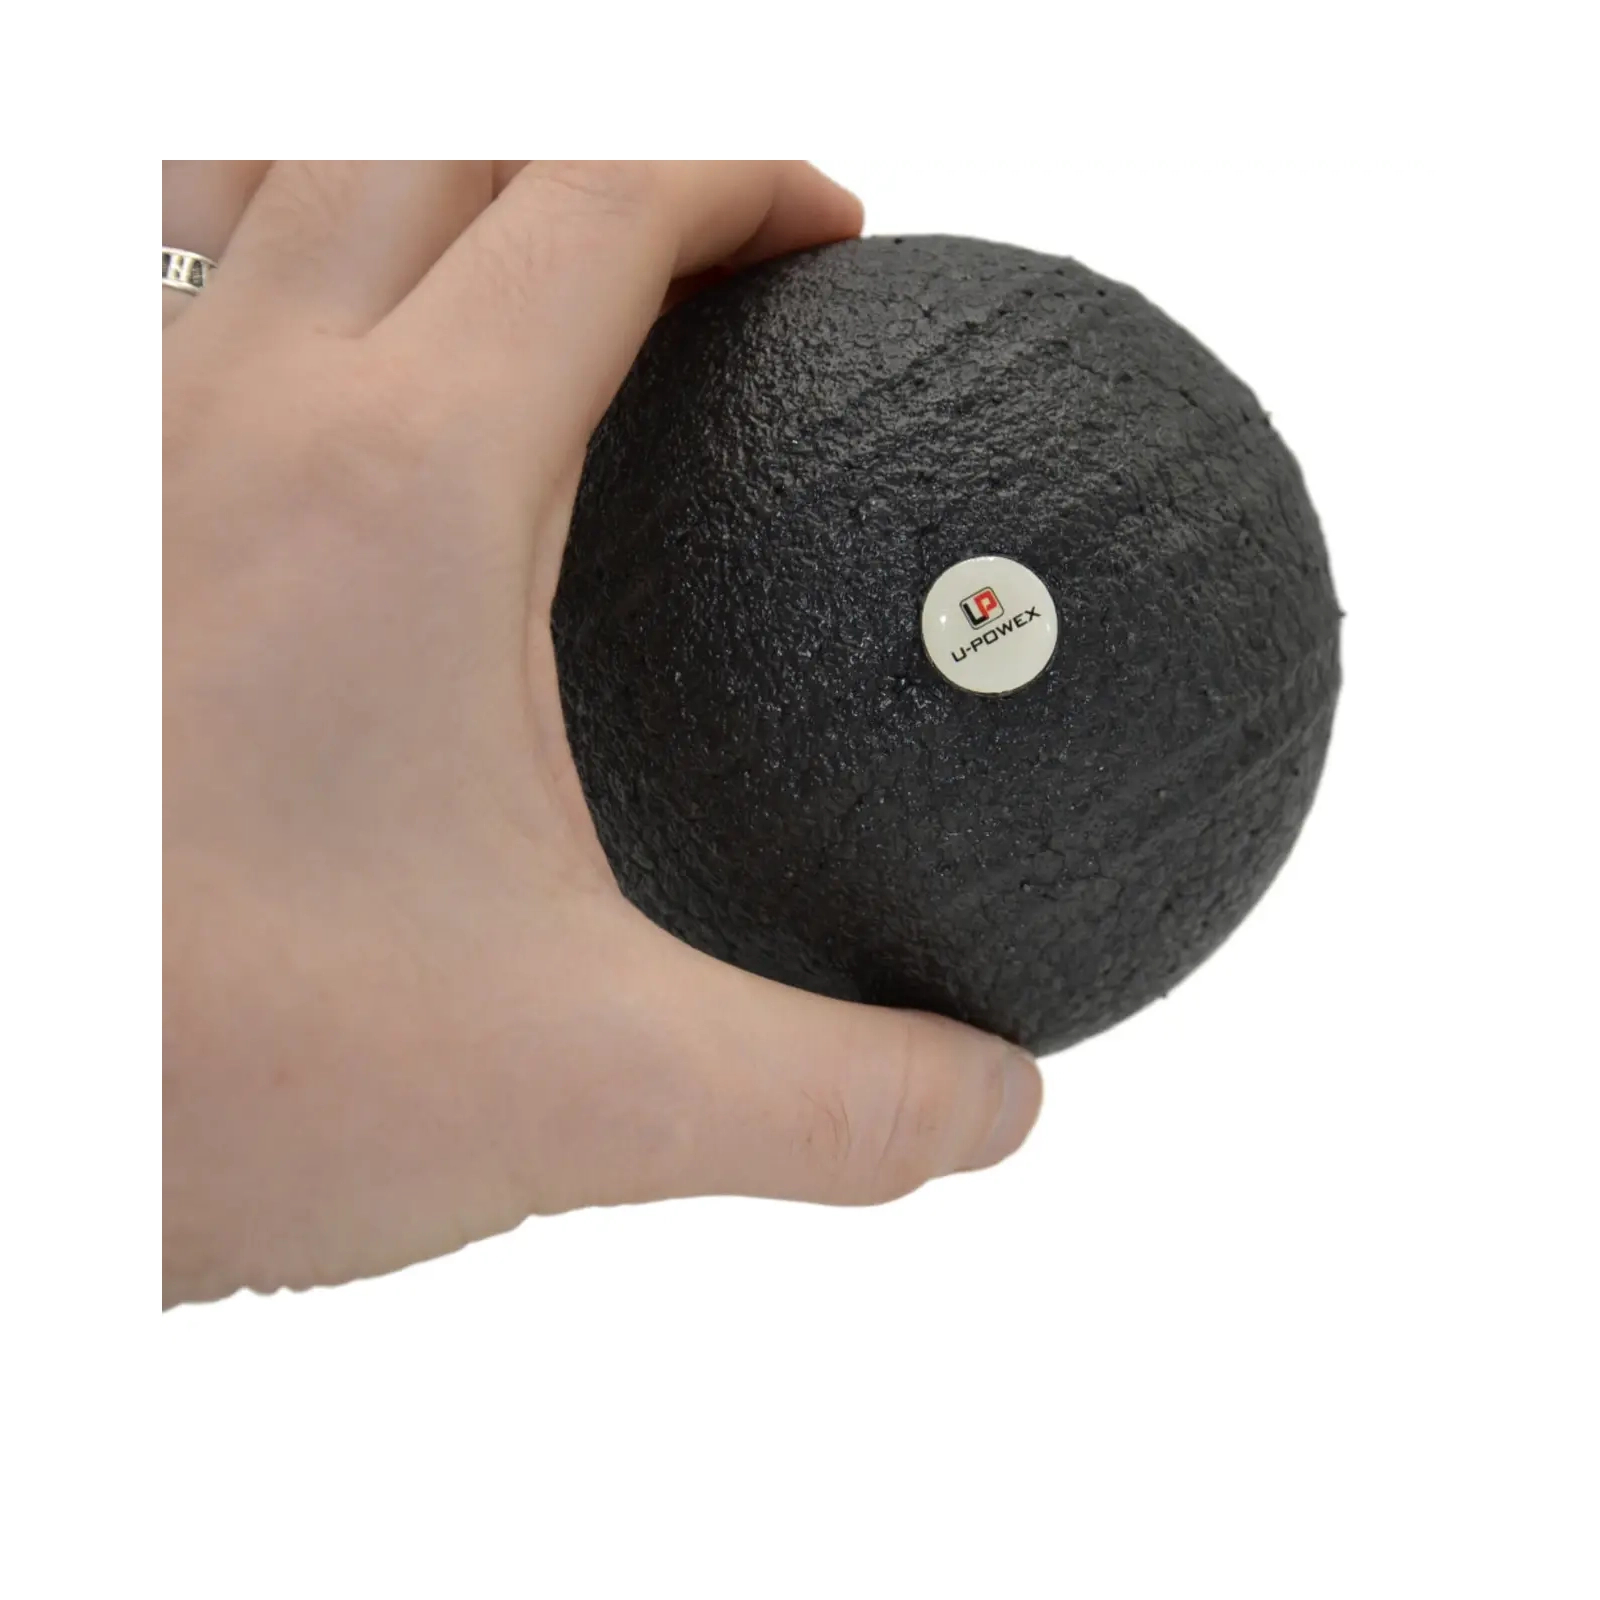 Массажный мяч U-Powex Epp foam ball d8cm Black (UP_1003_Ball_D8cm) изображение 5